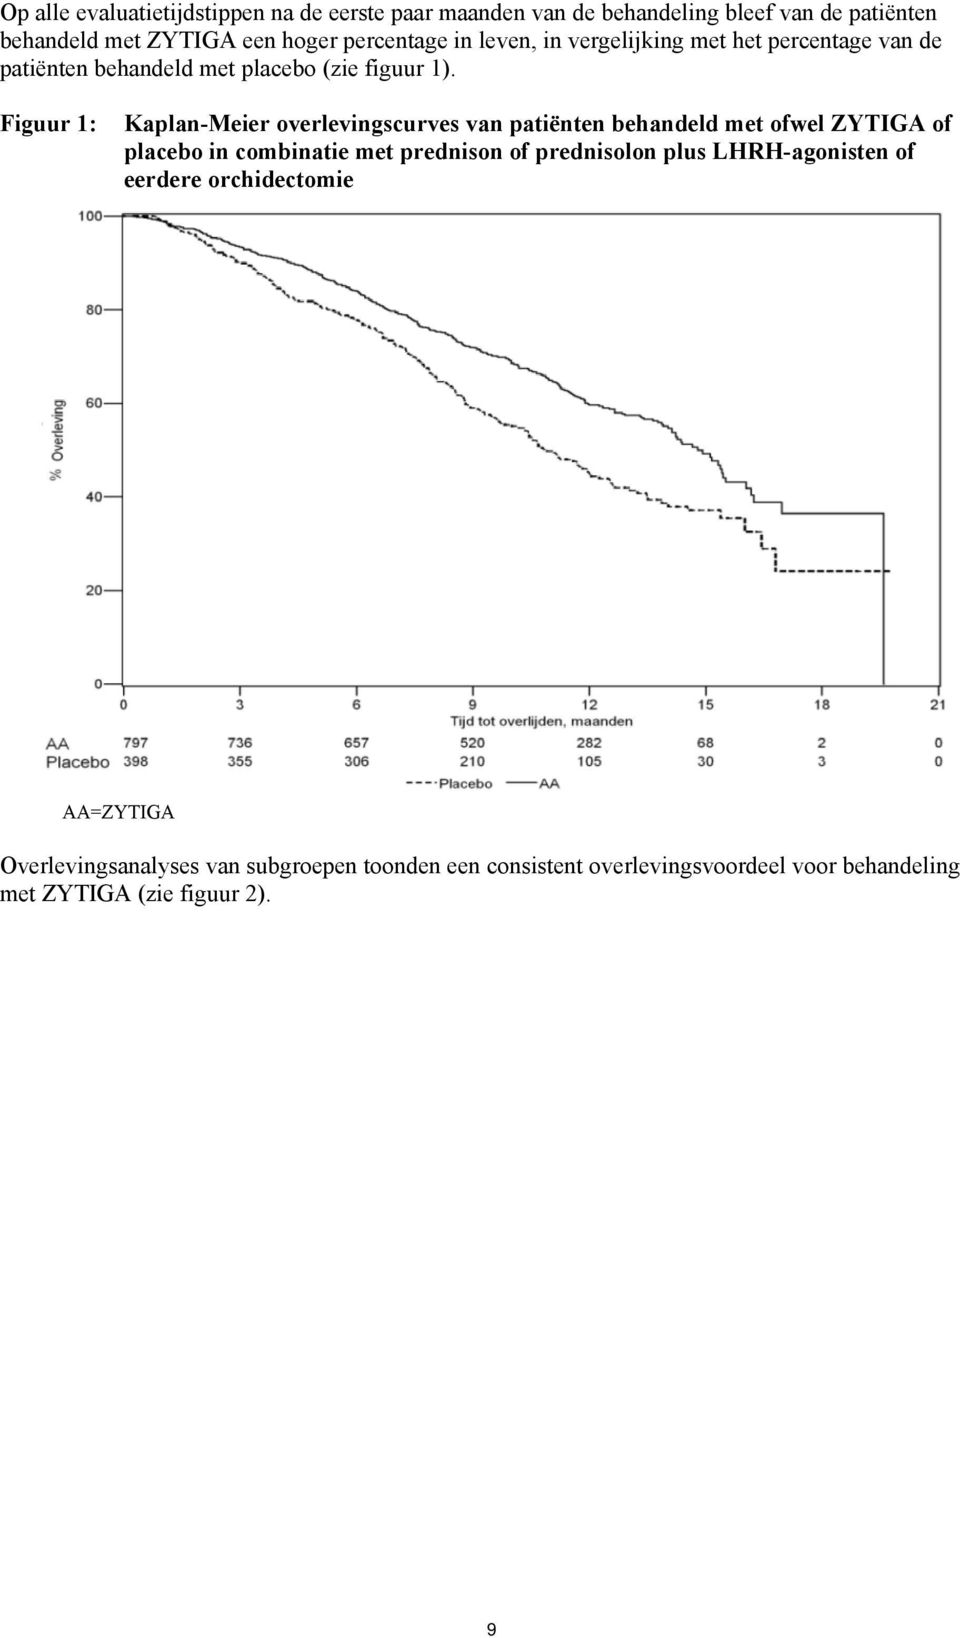 Figuur 1: Kaplan-Meier overlevingscurves van patiënten behandeld met ofwel ZYTIGA of placebo in combinatie met prednison of prednisolon